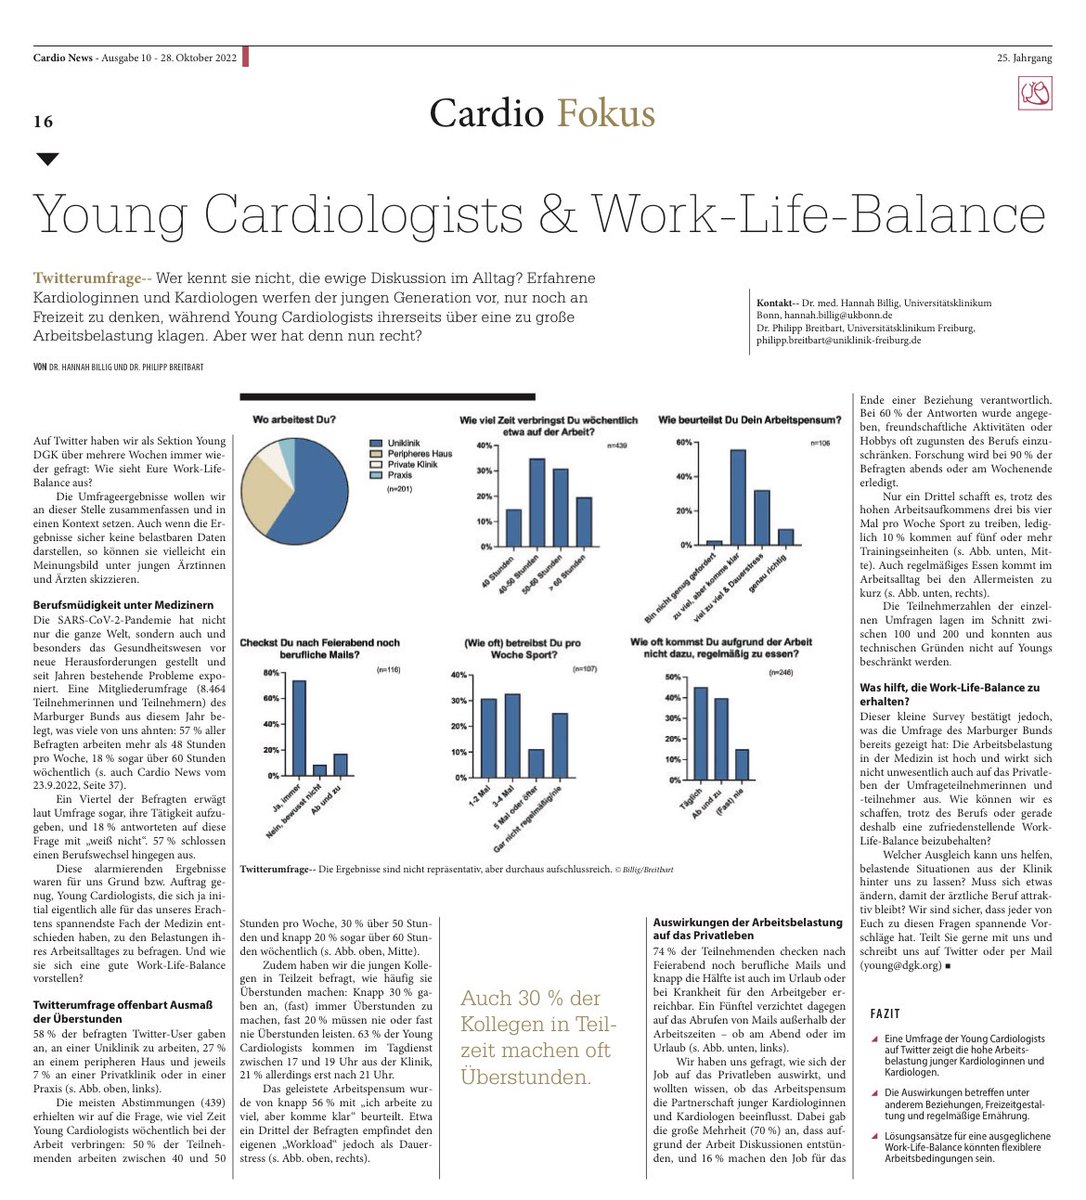 Wir haben über mehrere Wochen immer wieder Umfragen zu Eurer #WorkLifeBalance getweetet. In der #CardioNews könnt Ihr nachlesen, was dabei herausgekommen ist🤔 Danke fürs Teilen und Abstimmen! #CardioTwitter #MedTwitter @Kardiophil @Hannah_Billig_